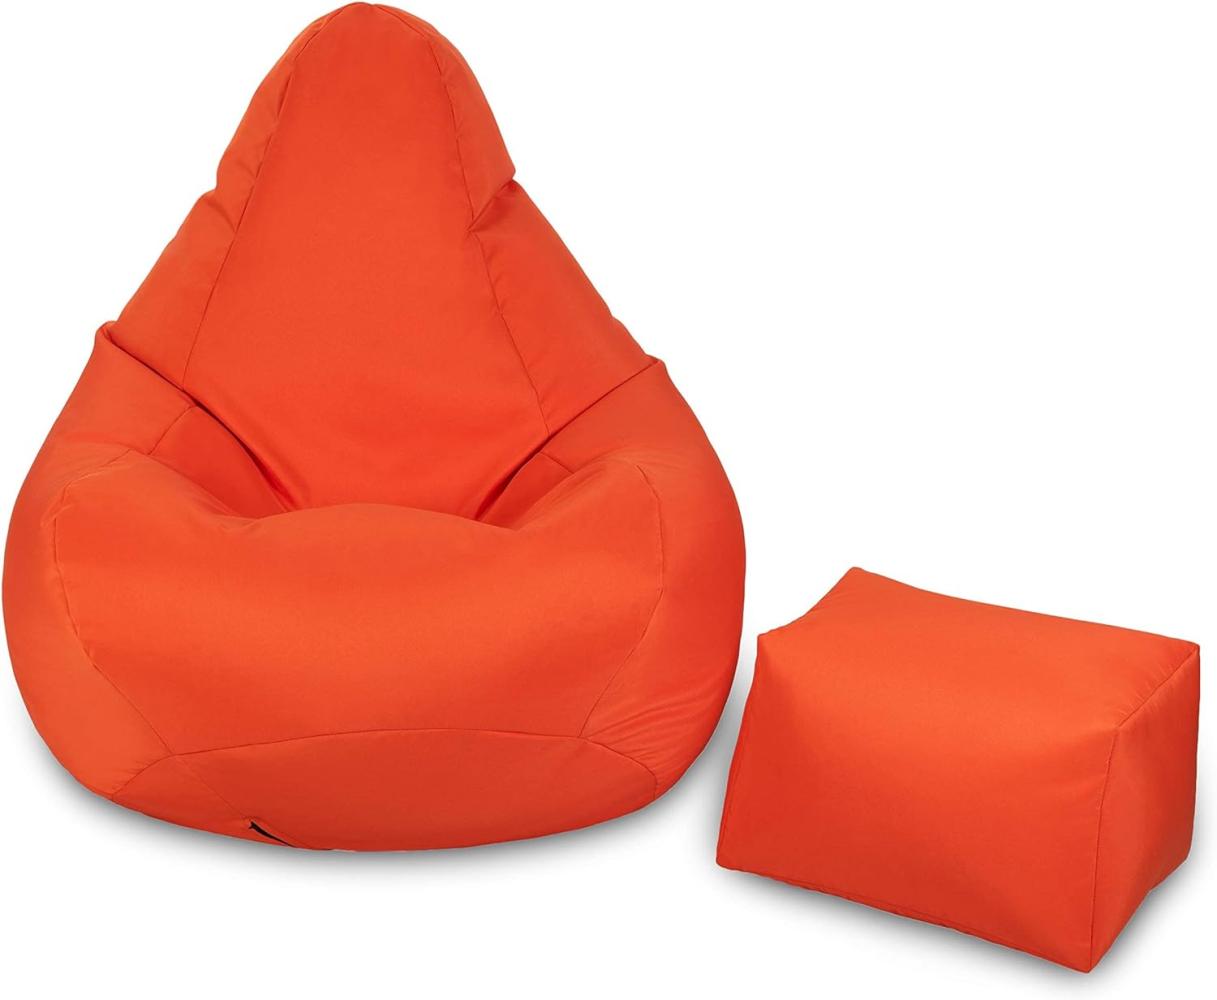 Loft 25 Gaming Sitzsack Outdoor | Gaming Sessel für den Innenbereich des Wohnzimmers im Freien | Wasserbeständig | Ergonomisches Design zur Körperunterstützung (Orange, Sitzsack Set) Bild 1